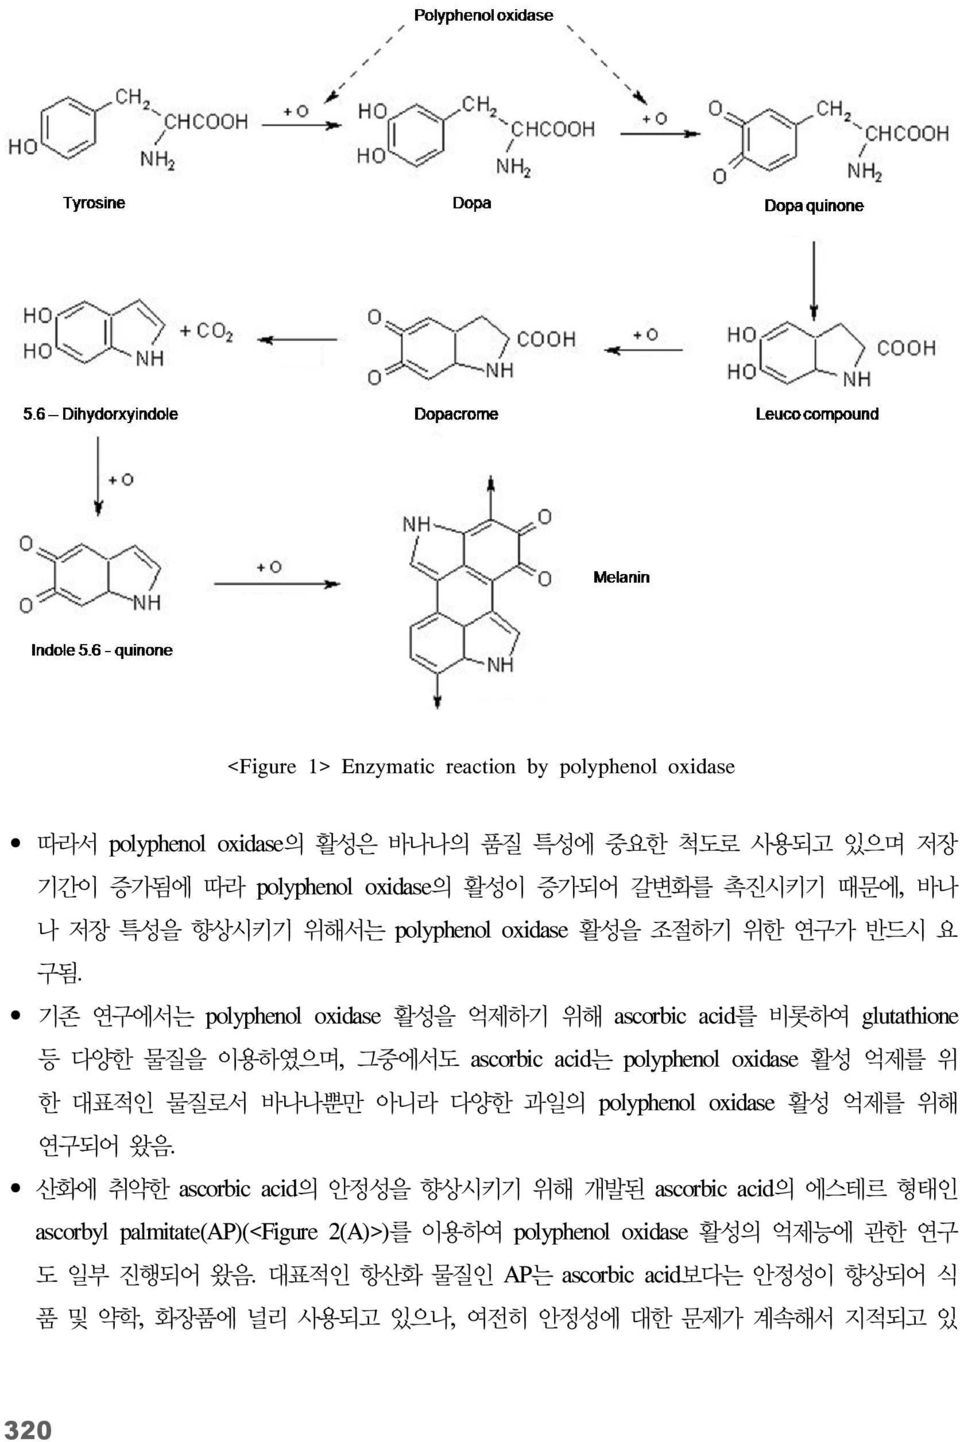 기존 연구에서는 polyphenol oxidase 활성을 억제하기 위해 ascorbic acid를 비롯하여 glutathione 등 다양한 물질을 이용하였으며, 그중에서도 ascorbic acid는 polyphenol oxidase 활성 억제를 위 한 대표적인 물질로서 바나나뿐만 아니라 다양한 과일의